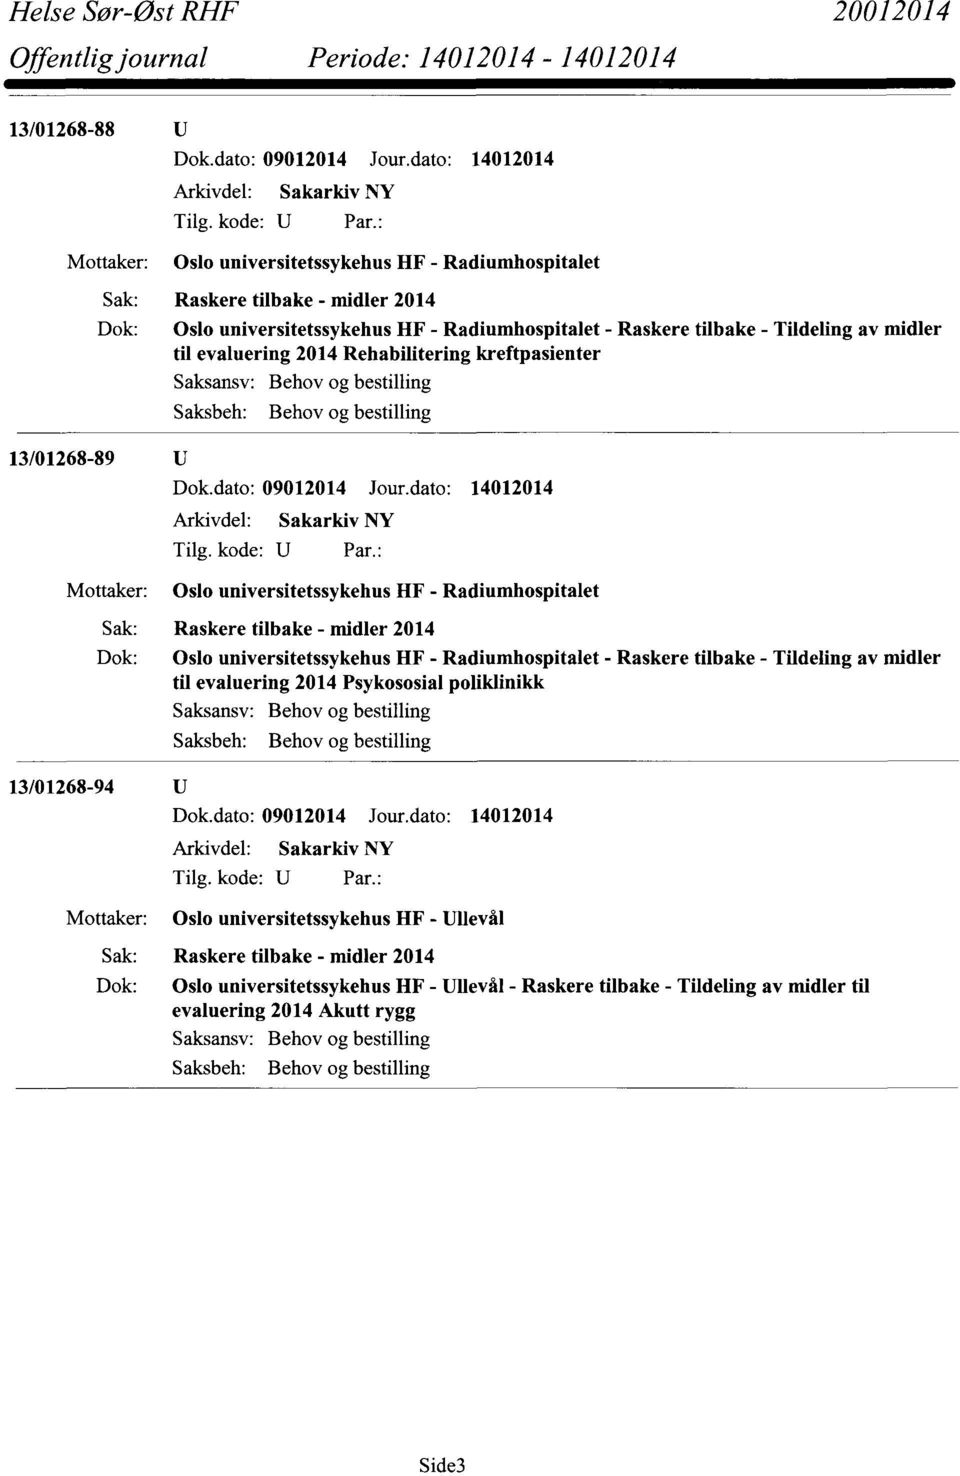 Radiumhospitalet Dok: Oslo universitetssykehus HF - Radiumhospitalet - Raskere tilbake - Tildeling av midler til evaluering 2014 Psykososial poliklinikk 13/01268-94 U Mottaker: Saksansv: